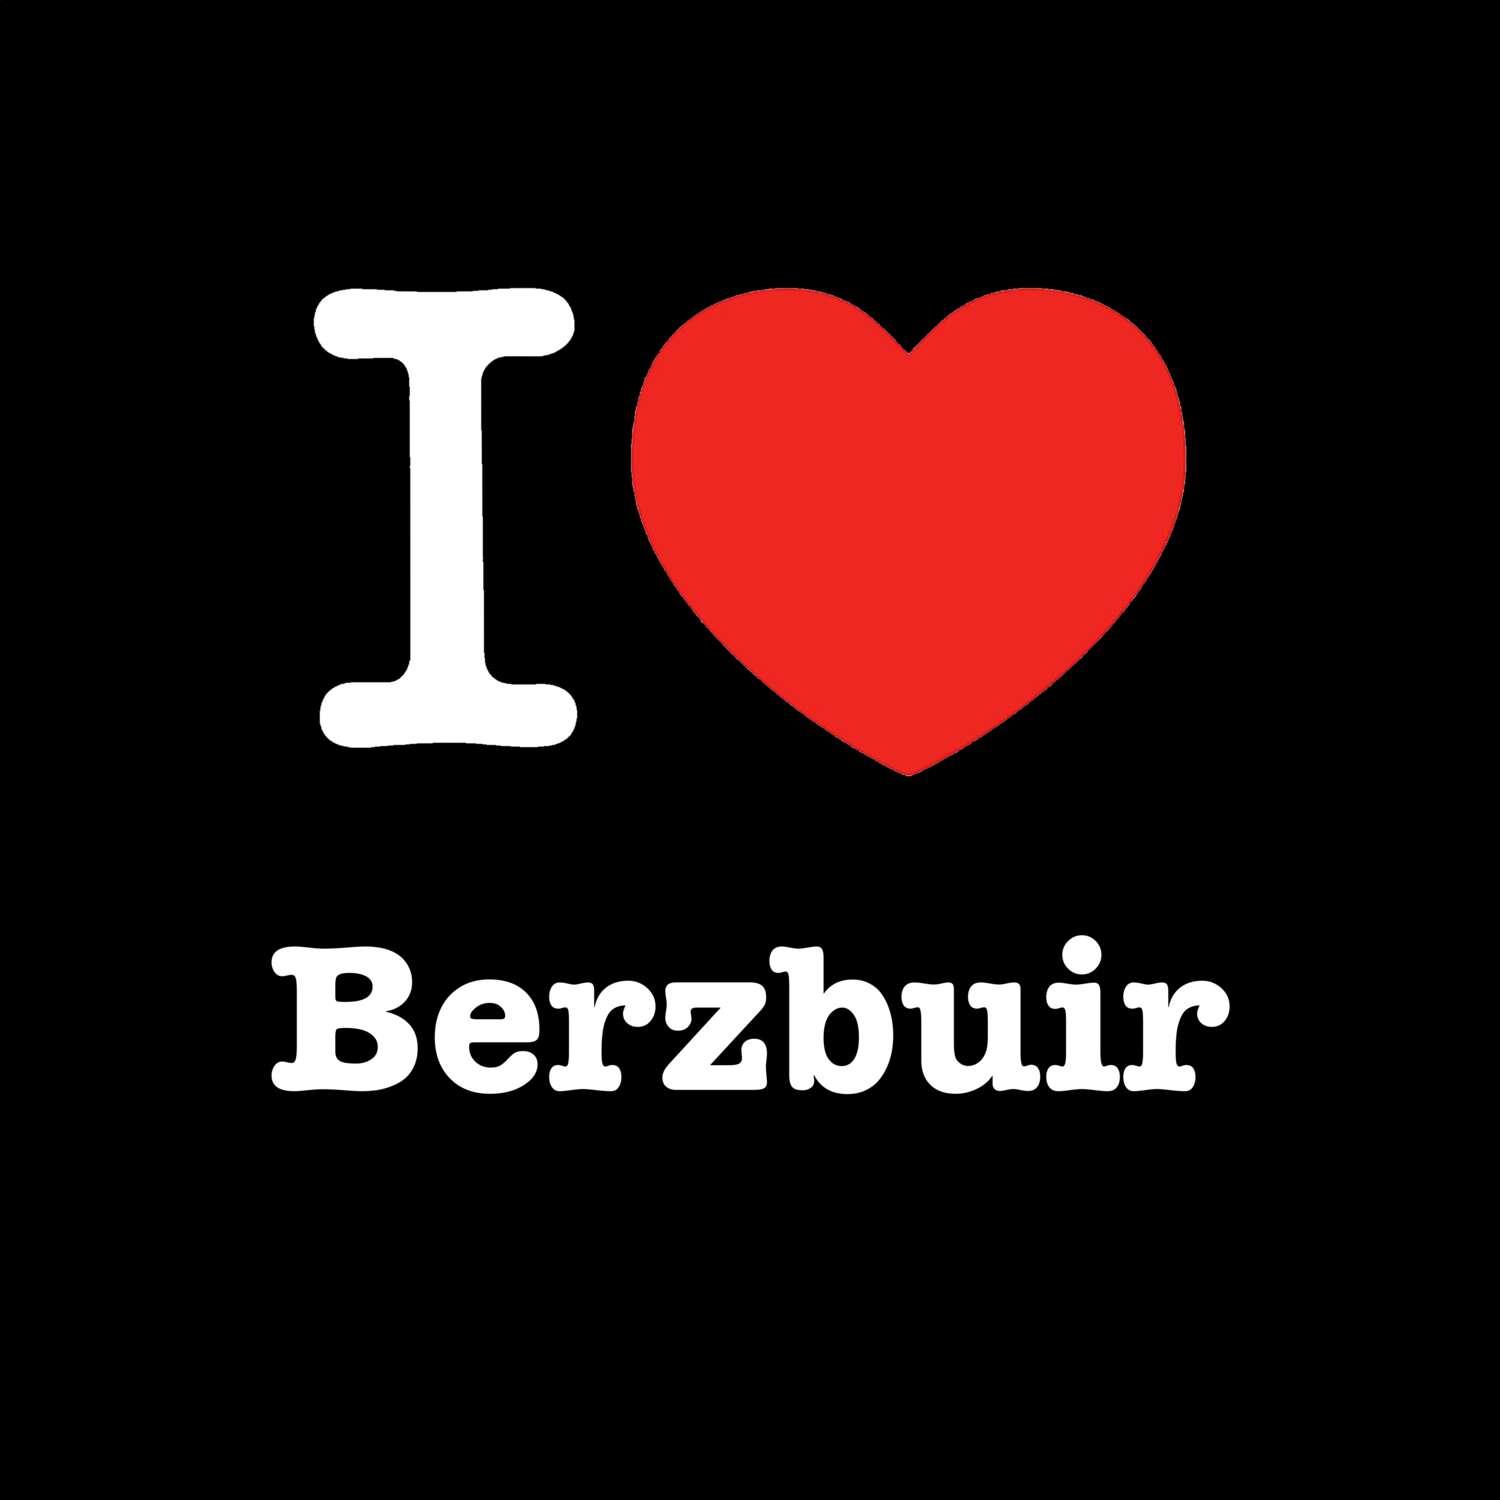 Berzbuir T-Shirt »I love«